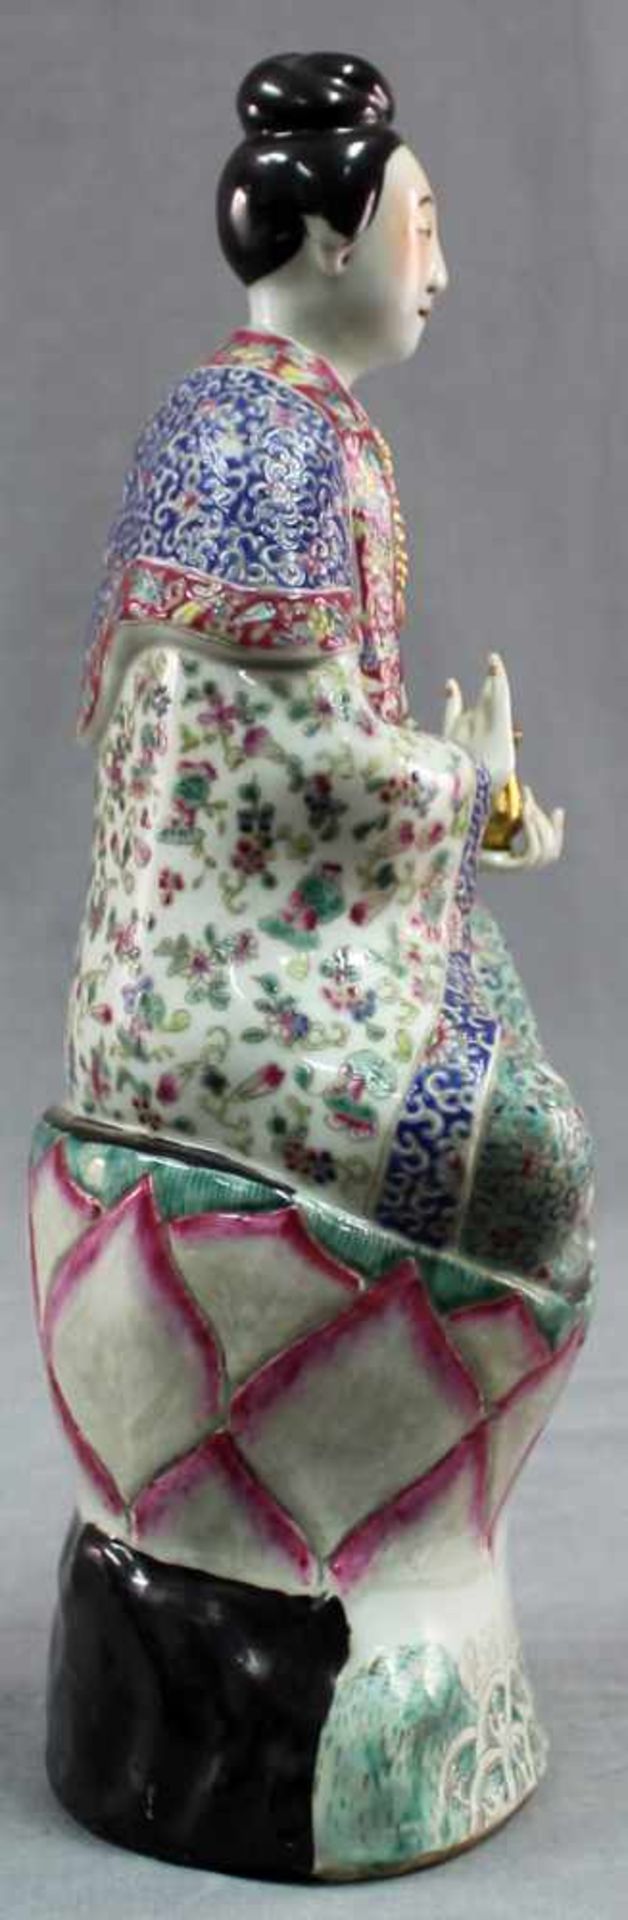 Blessing Buddha. Porcelain. Proably China around 1800. - Image 2 of 7